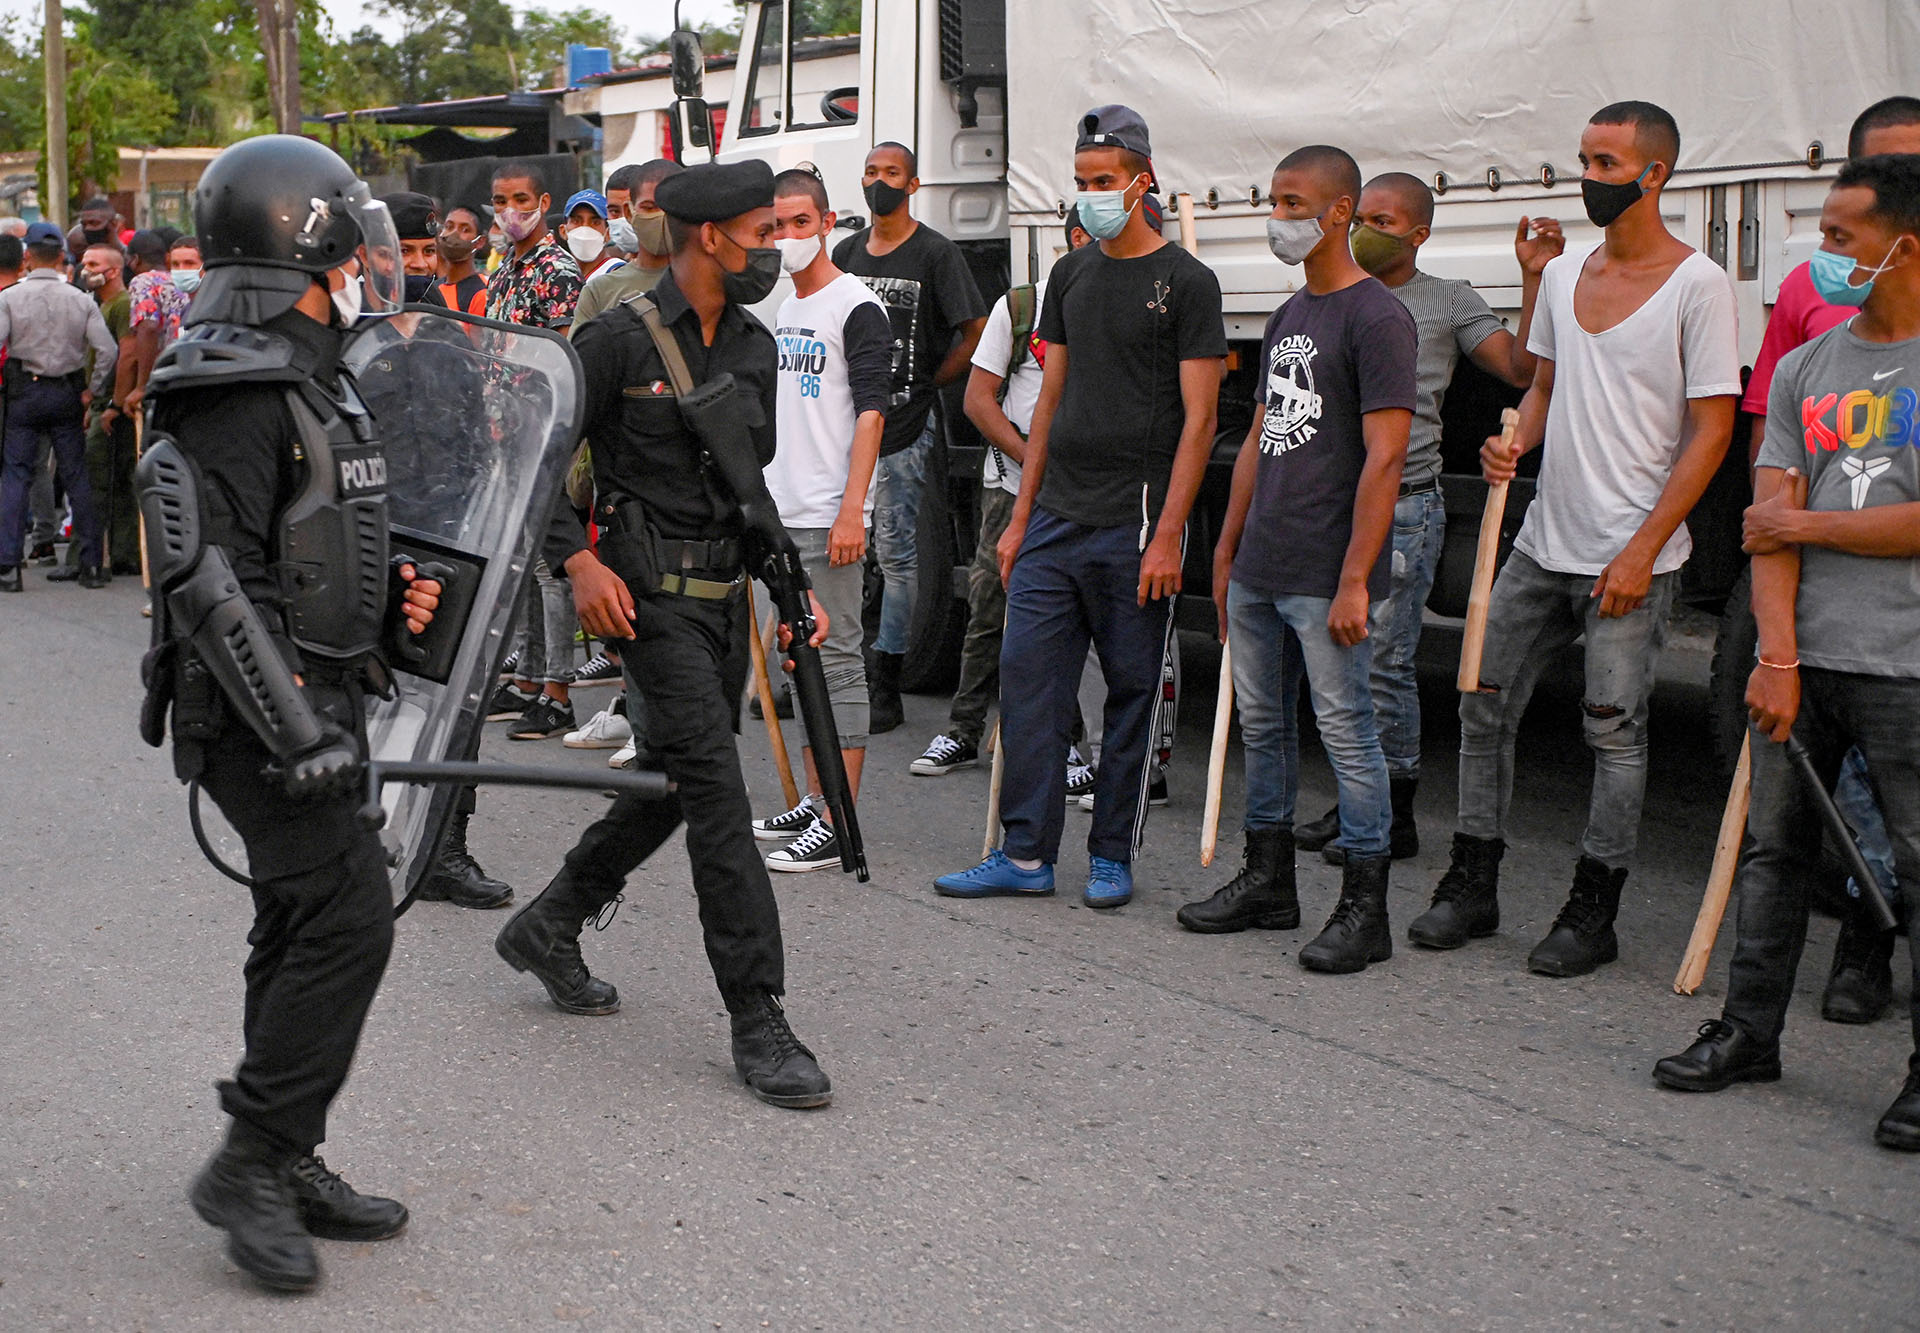 Jóvenes que apoyan al régimen castrista formados con palos frente a las fuerzas de seguridad en el municipio de Arroyo Naranjo, La Habana (YAMIL LAGE / AFP)